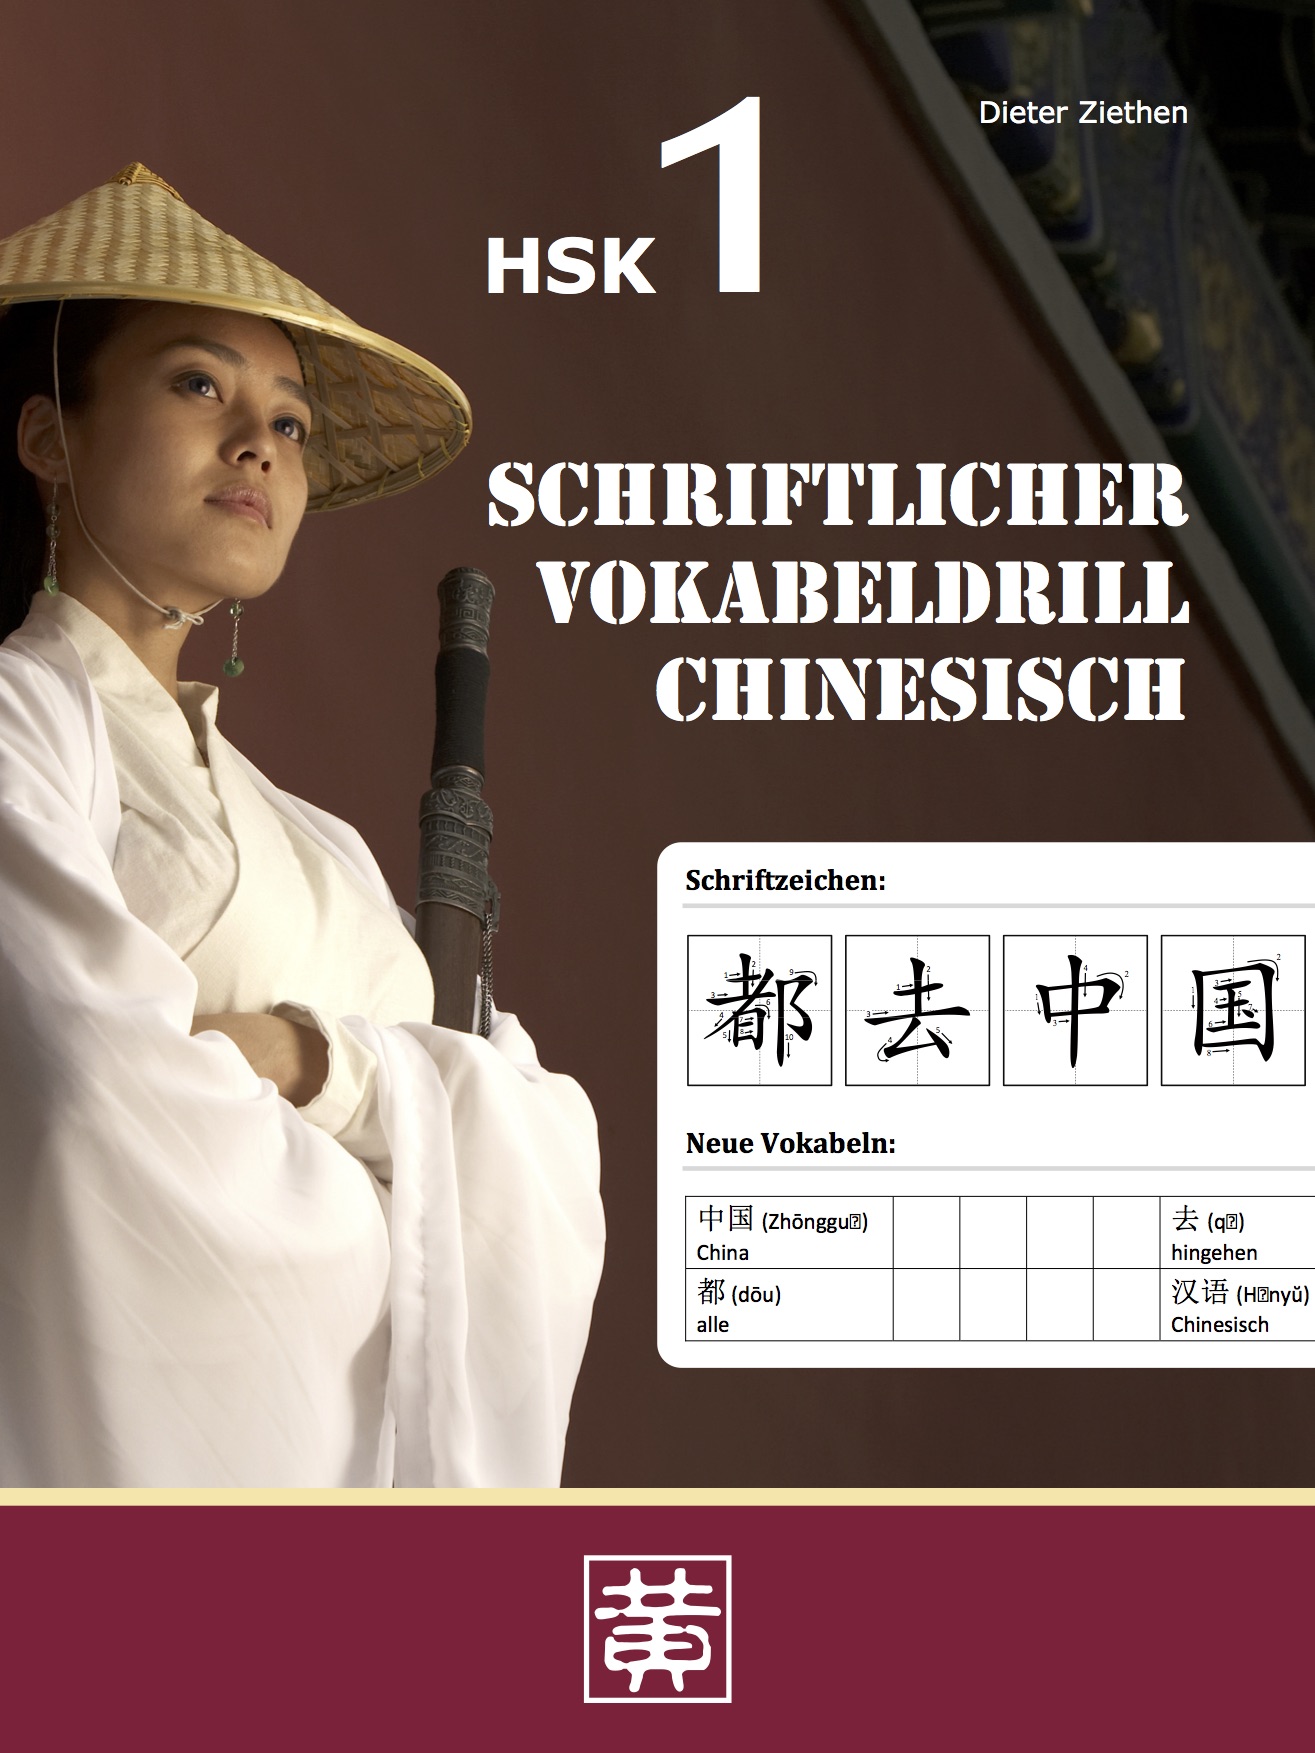 Das Cover zur Buchreihe HSK - Vokabeldrill Chinesisch von Hefei Huang Verlag zum Lernen der Vokabeln in der Sprache Chinesisch. Der Vokabeltrainer phase6 classic ist die beste App für bessere Noten.